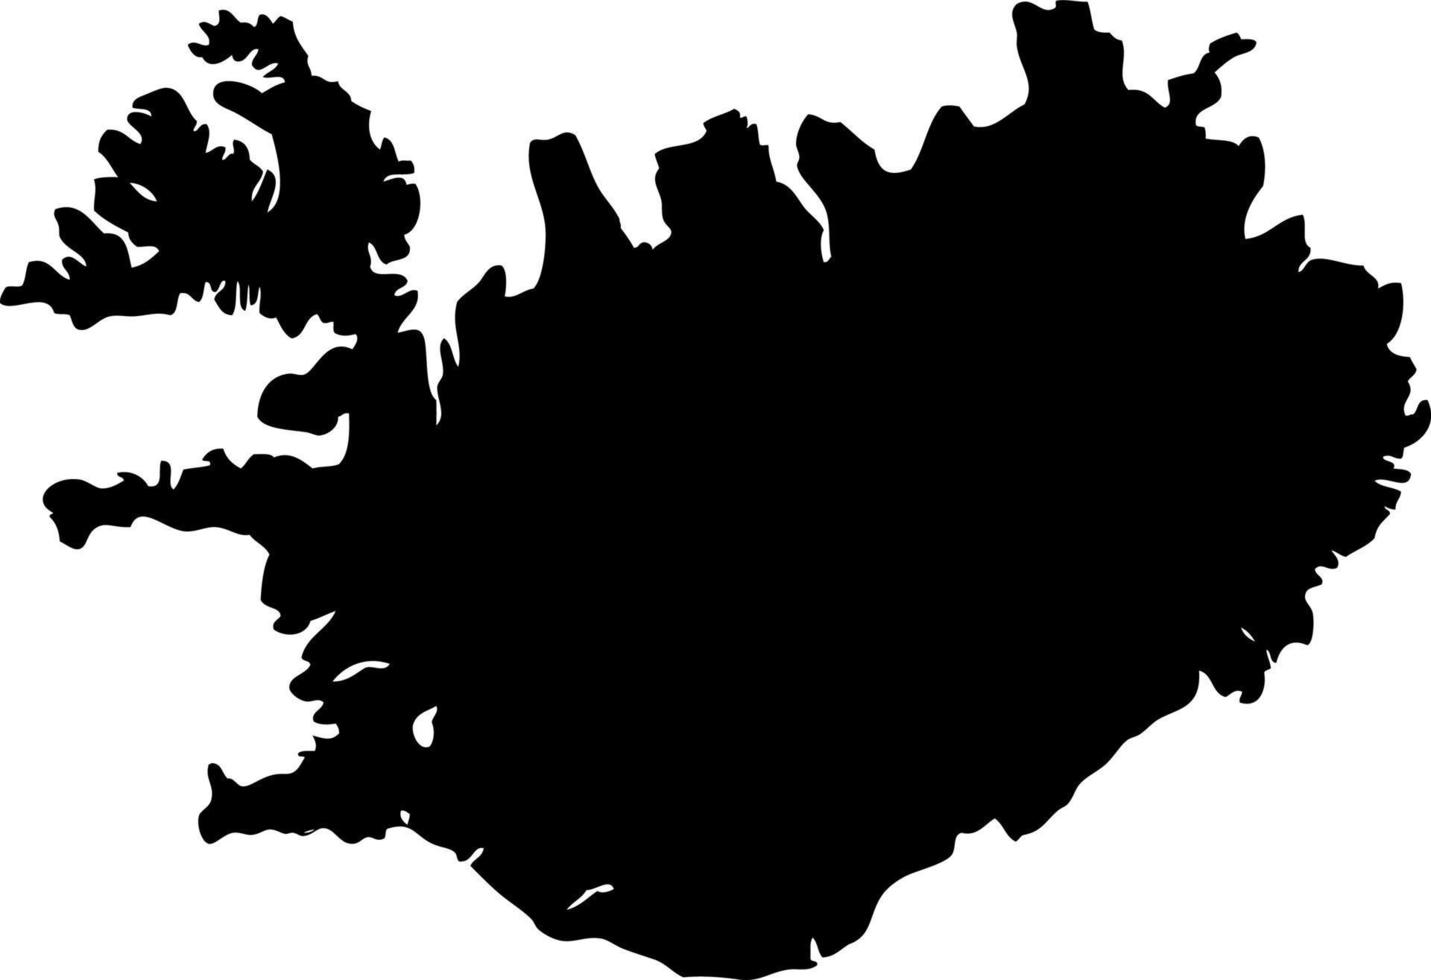 Europa nórdico Islandia mapa vector mapa.mano dibujado minimalismo estilo.